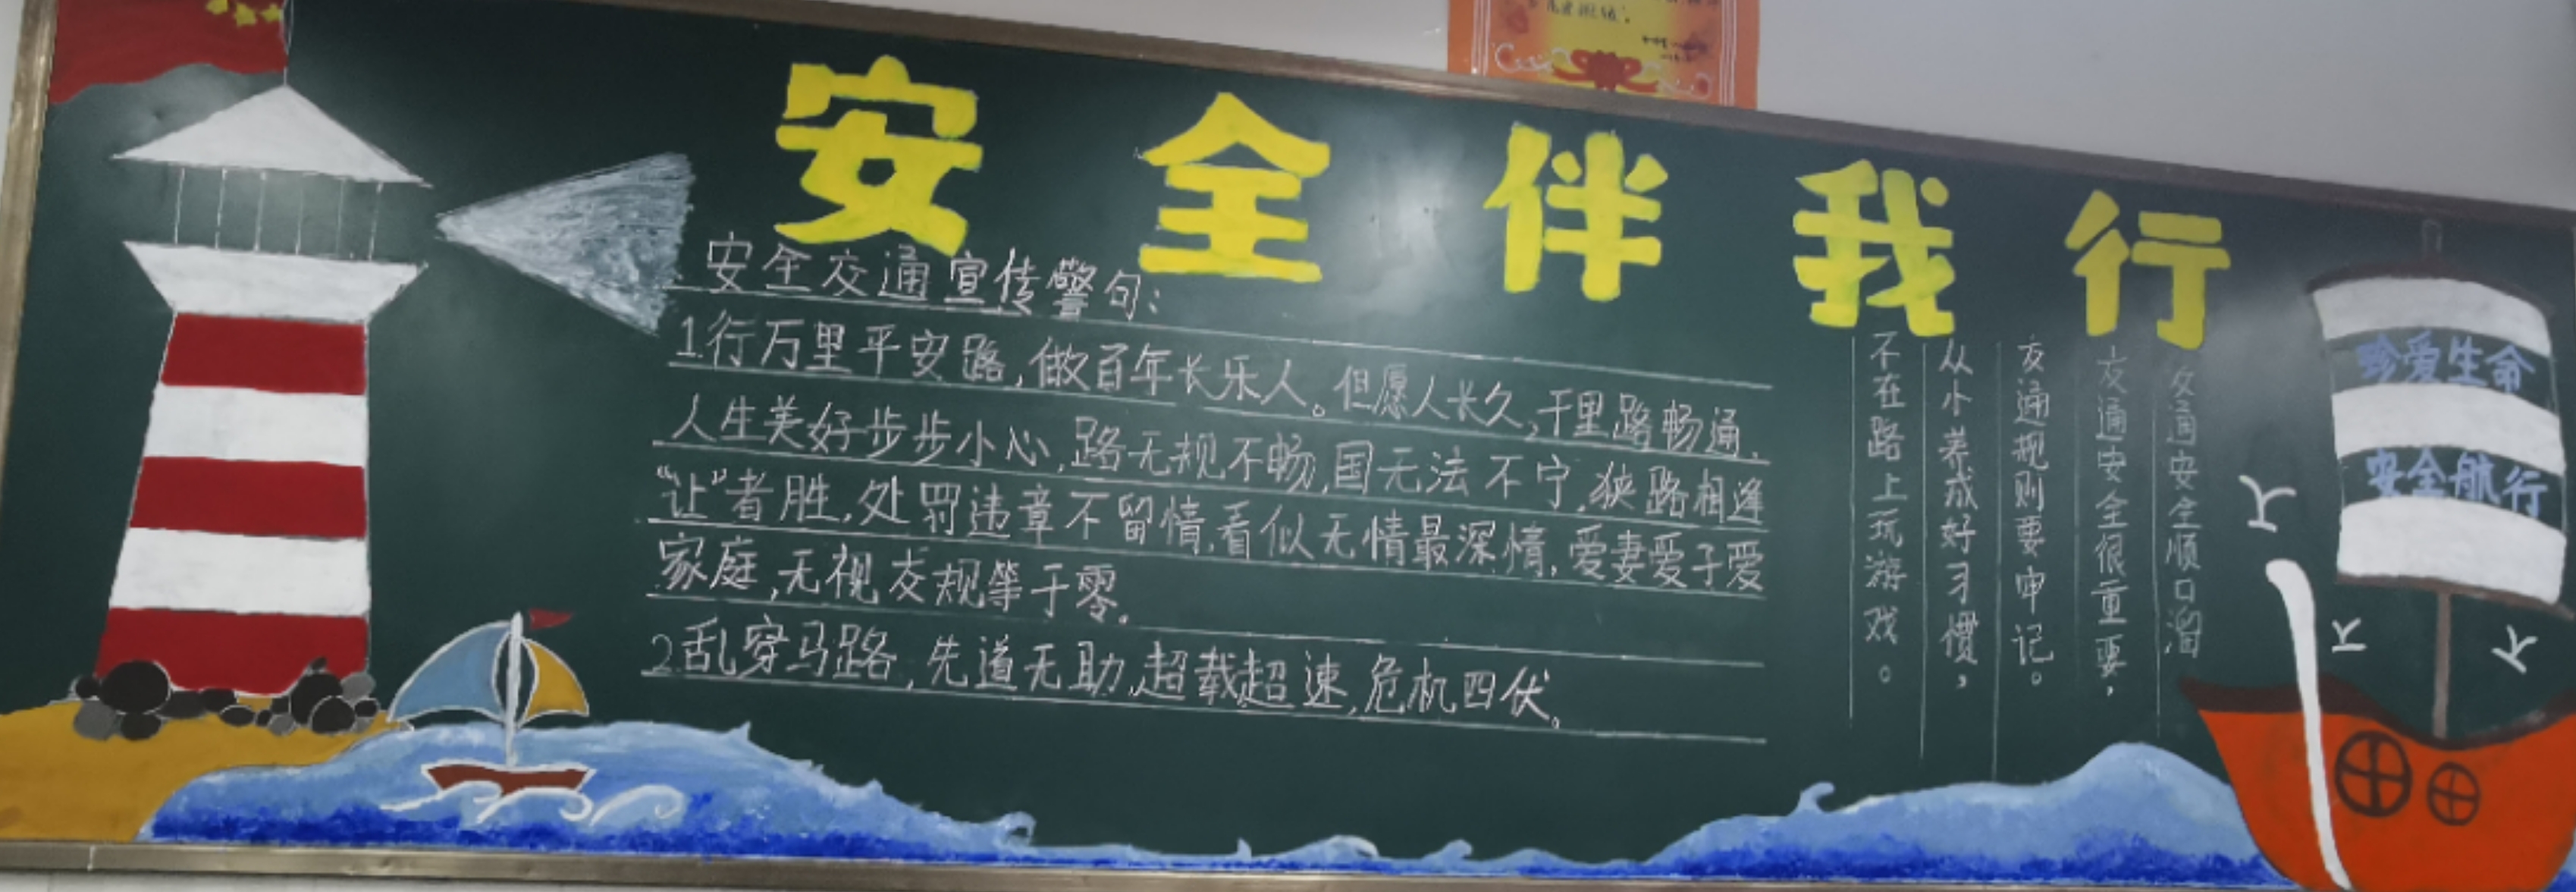 生命诚可贵,安全伴我行 ——郑州市第107高级中学开展安全主题黑板报